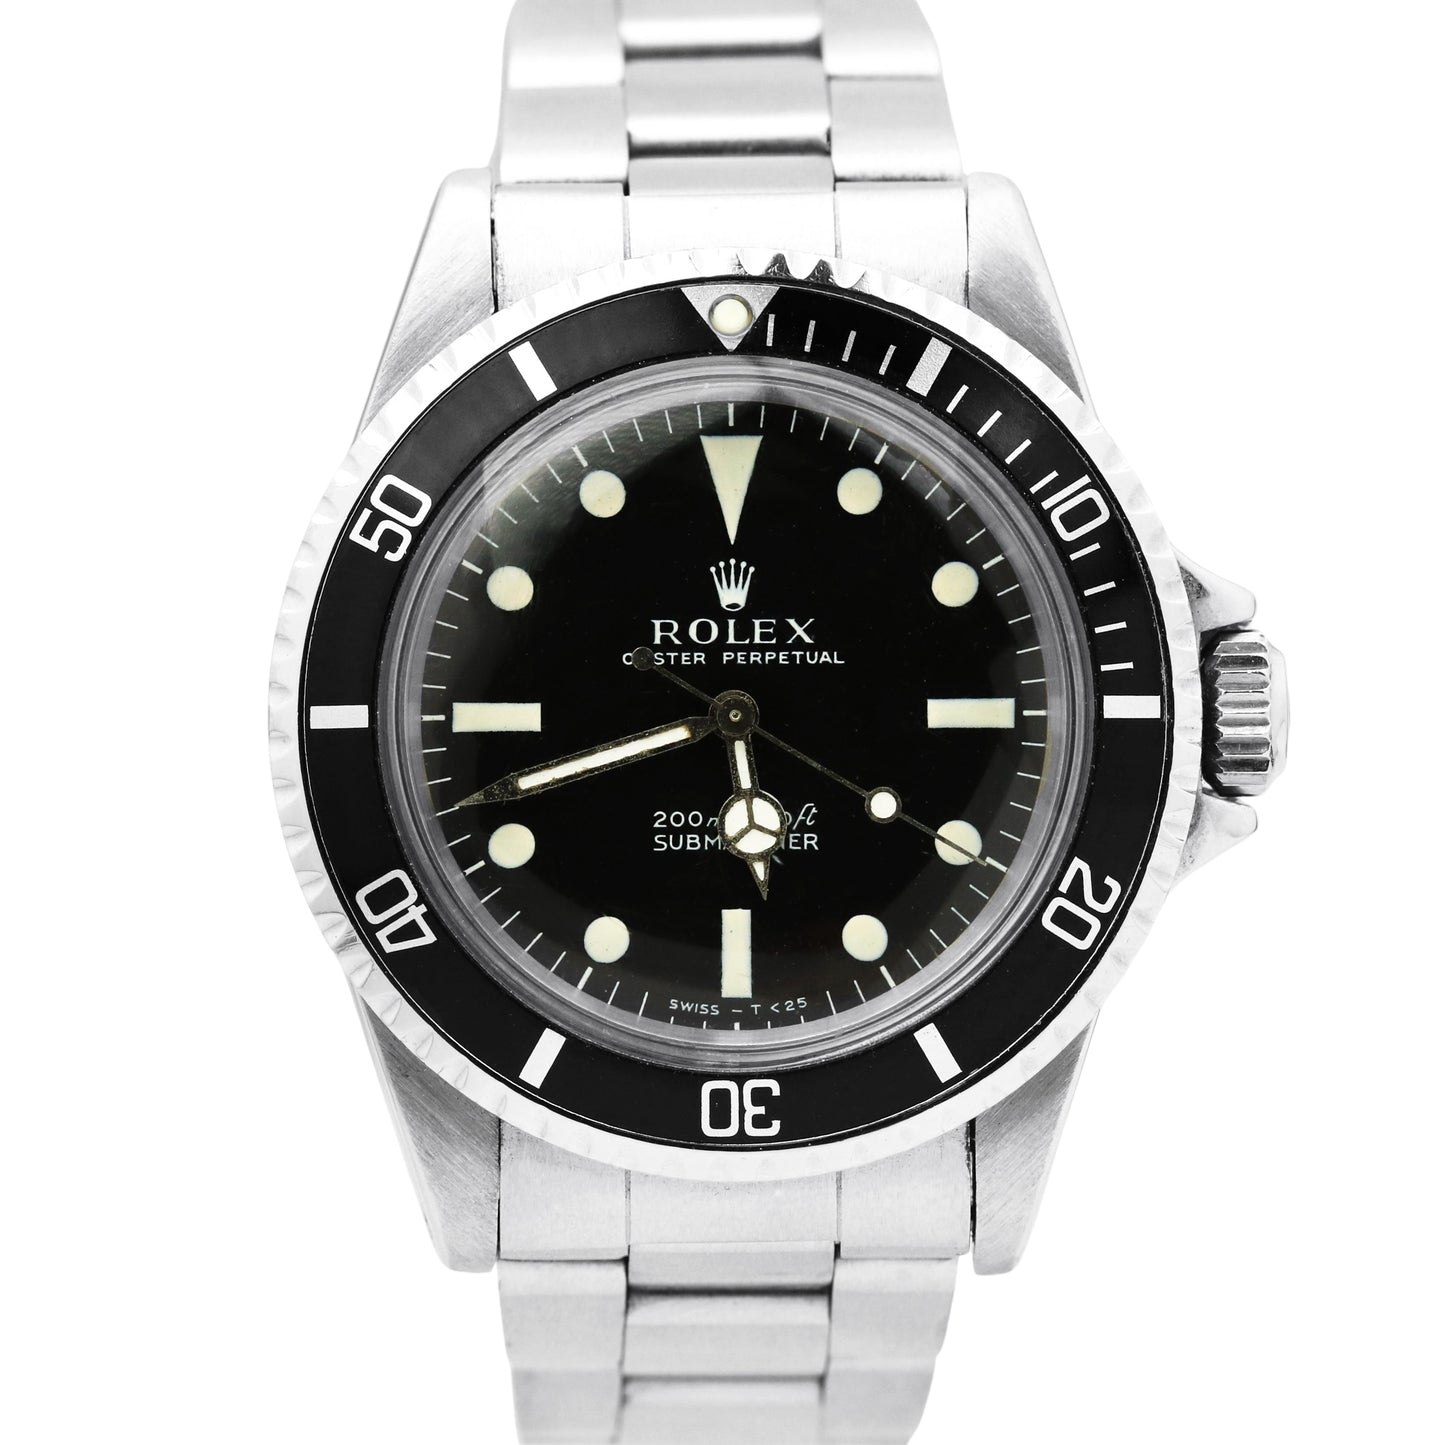 VINTAGE 1968 Rolex Submariner METERS FIRST 1.78xx 40mm Oyster Steel Watch 5513